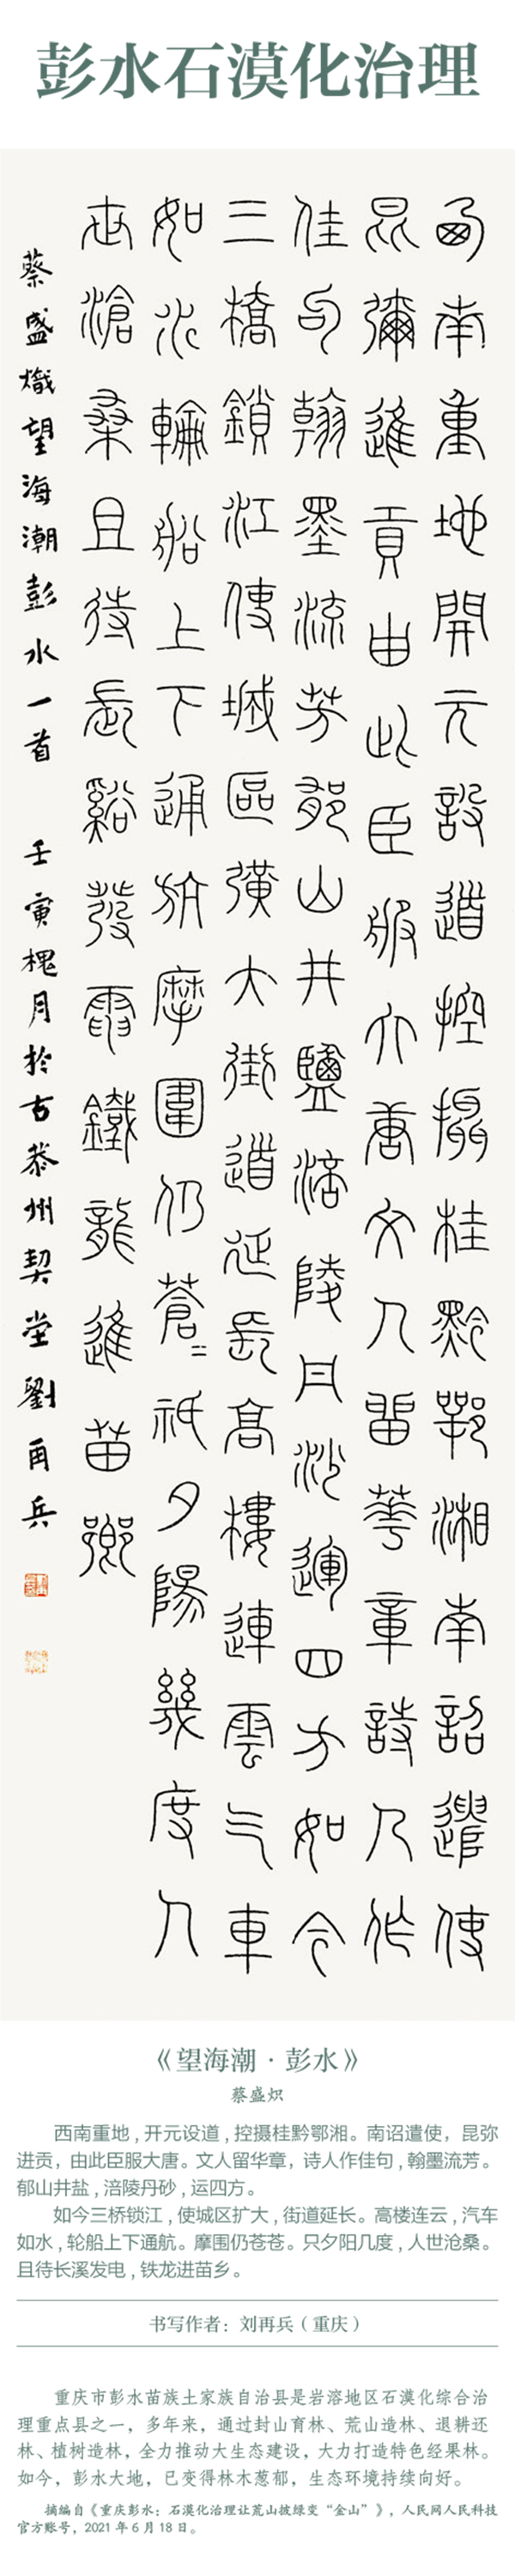 中国书协主题创作书法系列展——美丽中国插图17题字网